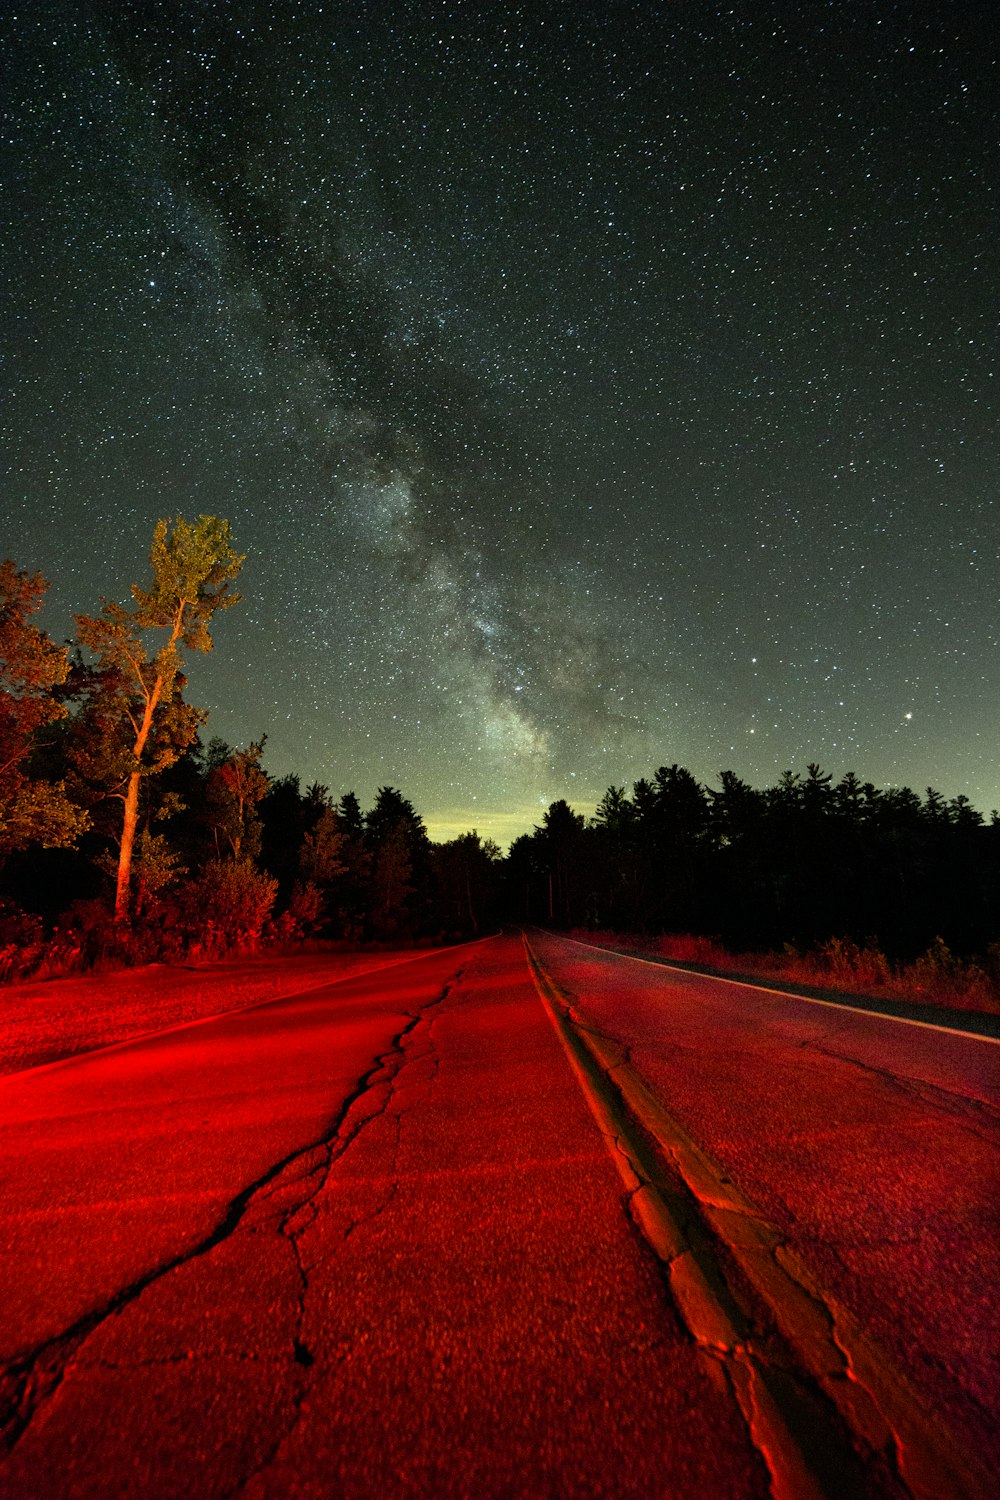 Carretera recta de hormigón gris cerca de árboles altos bajo estrellas blancas por la noche